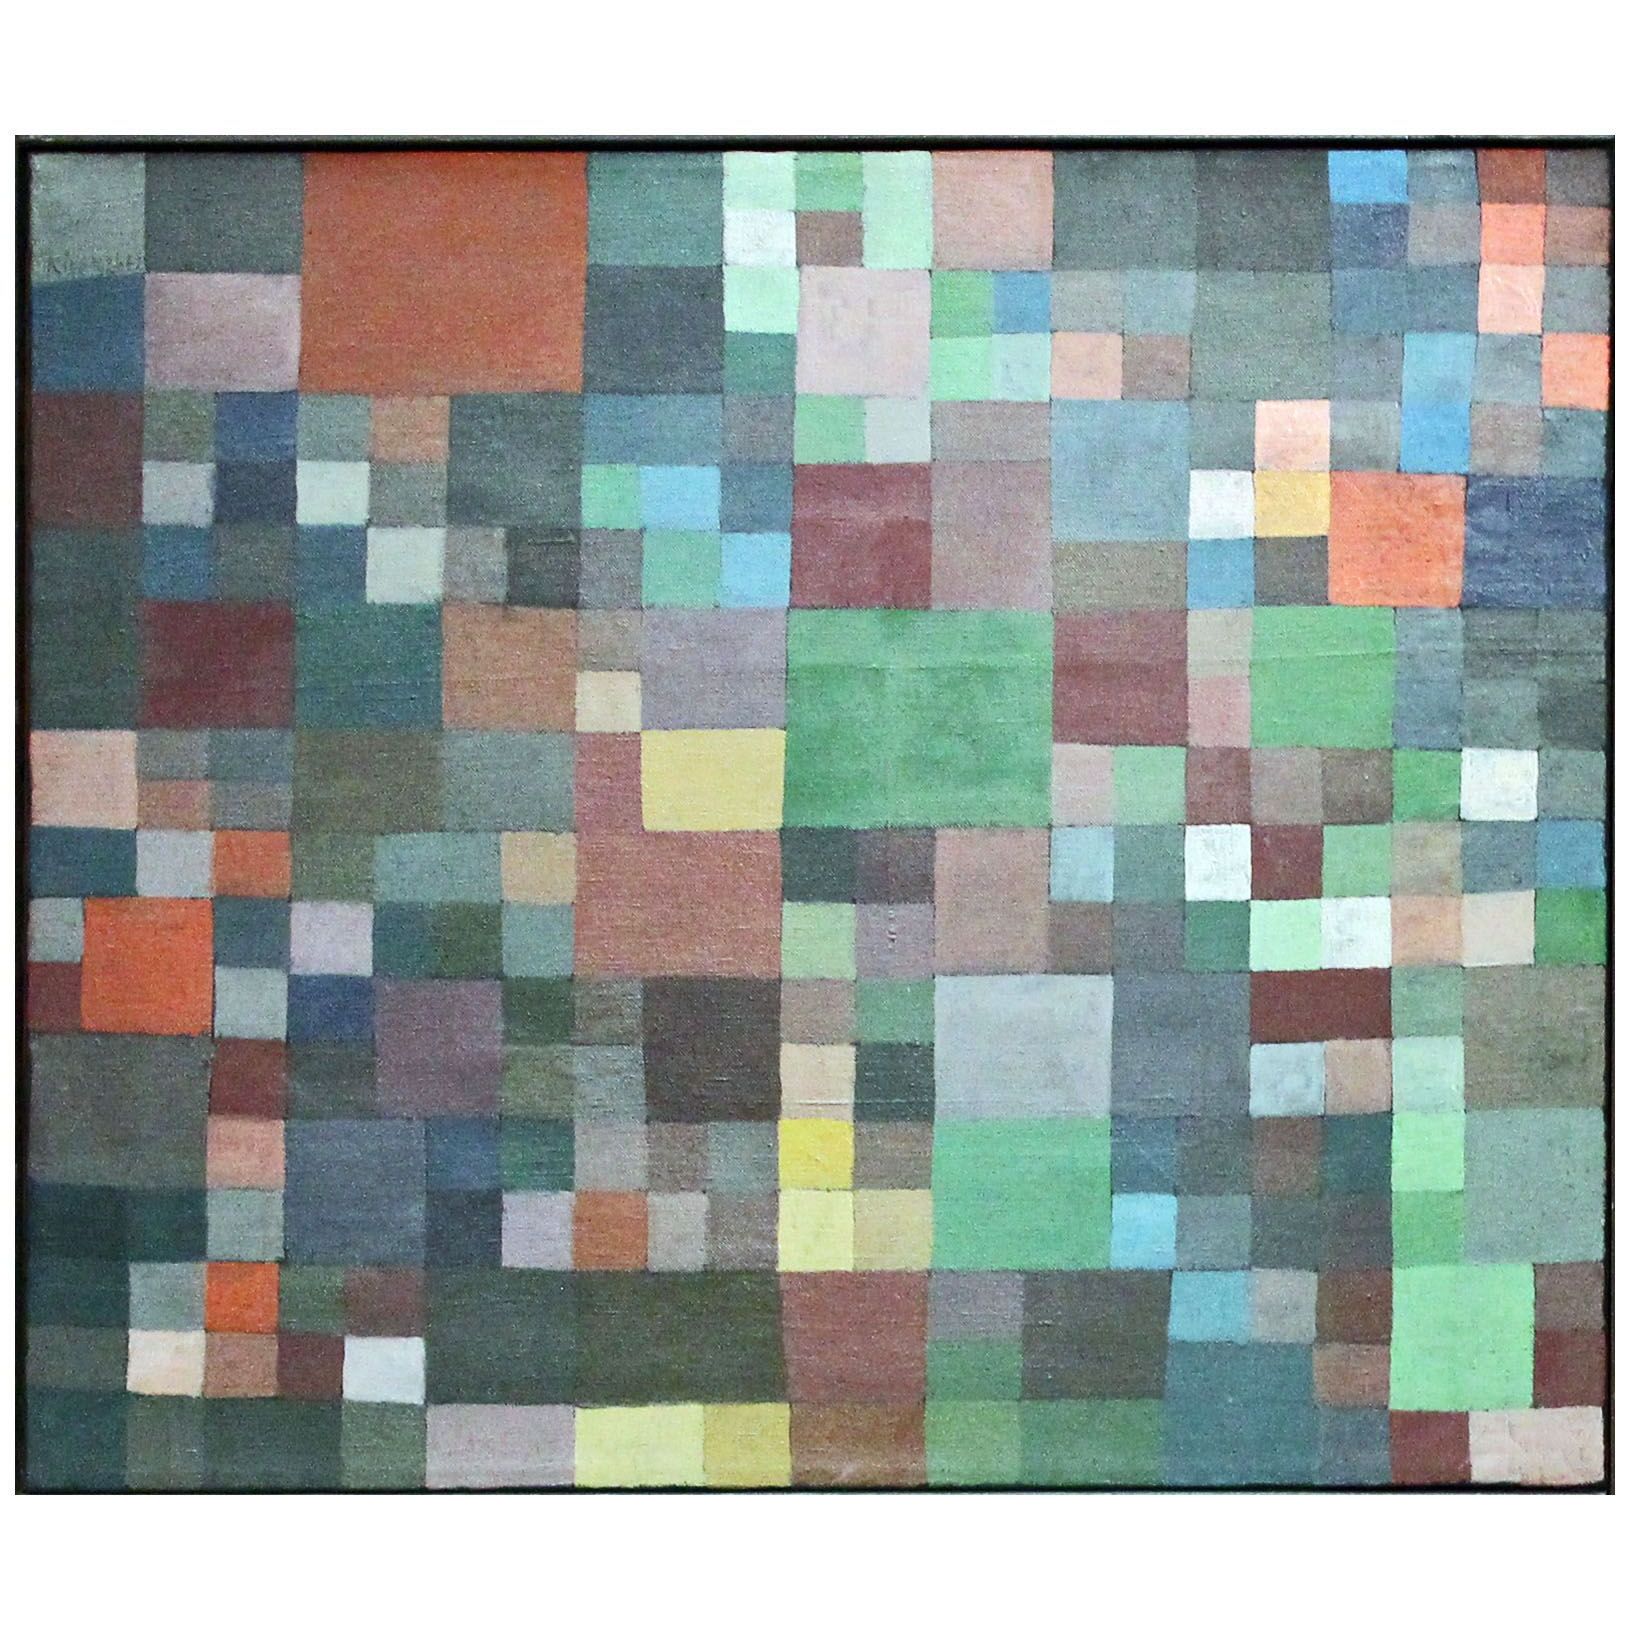 Paul Klee. Harmonie E zwie. 1926. Privatsammlung